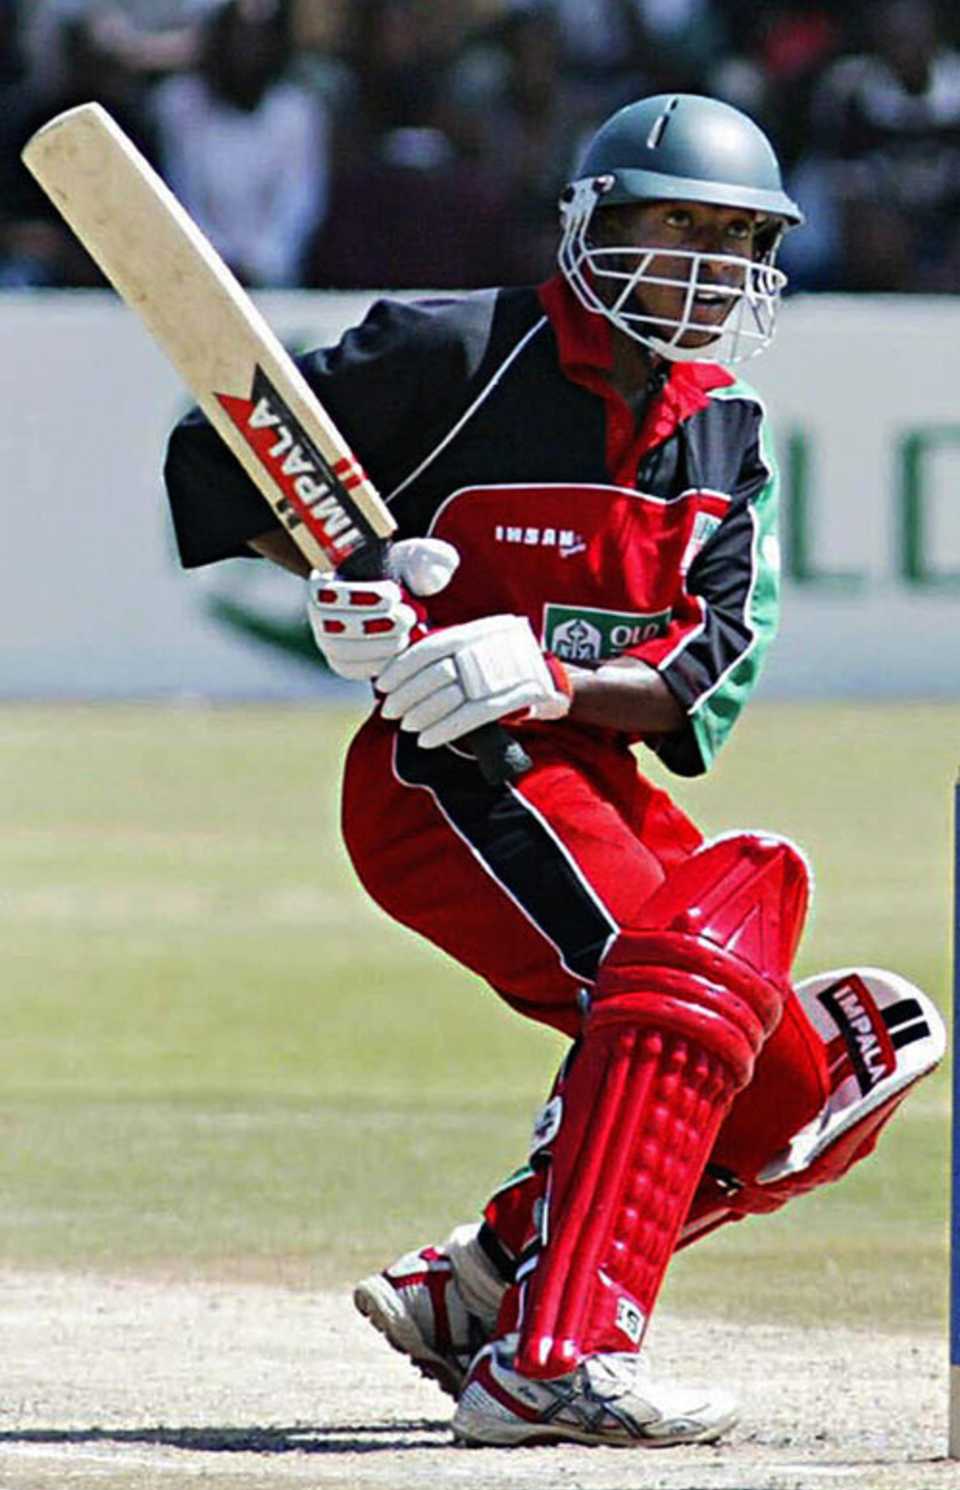 Vusi Sibanda on his way to 93 not out, Zimbabwe v Bangladesh, 2nd ODI, Harare, February 6, 2007